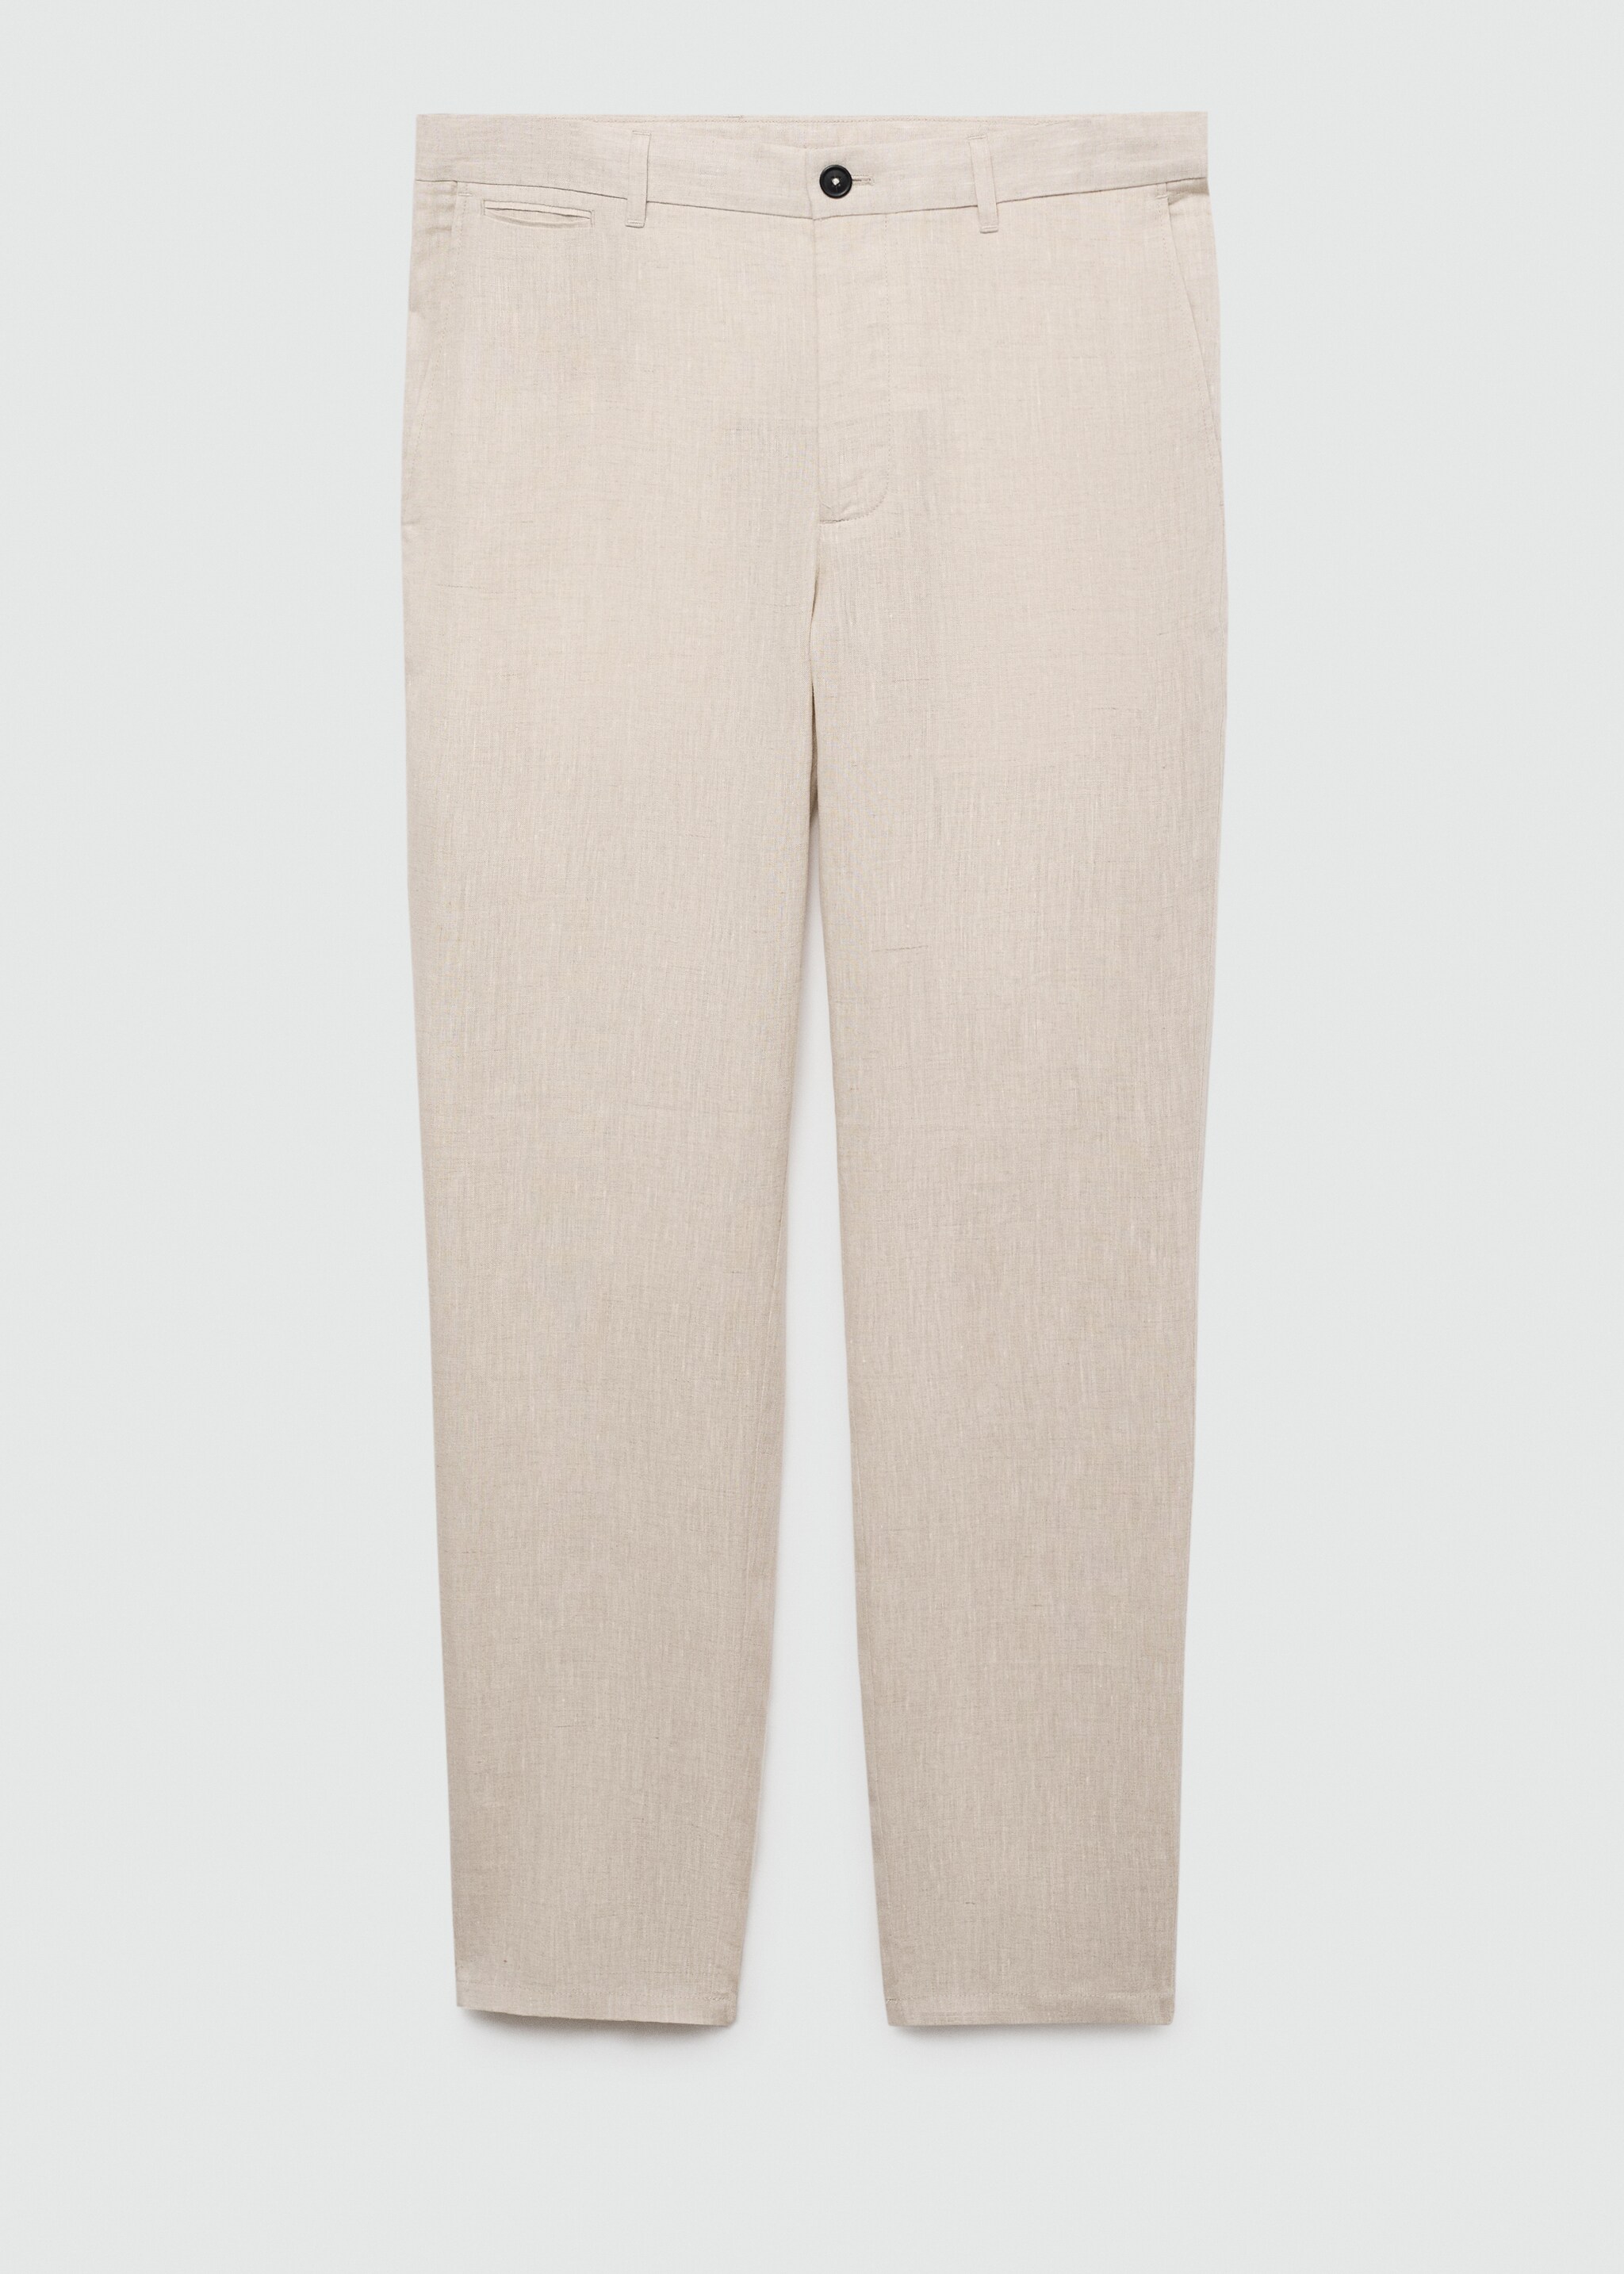 Pantalón 100% lino slim fit - Artículo sin modelo